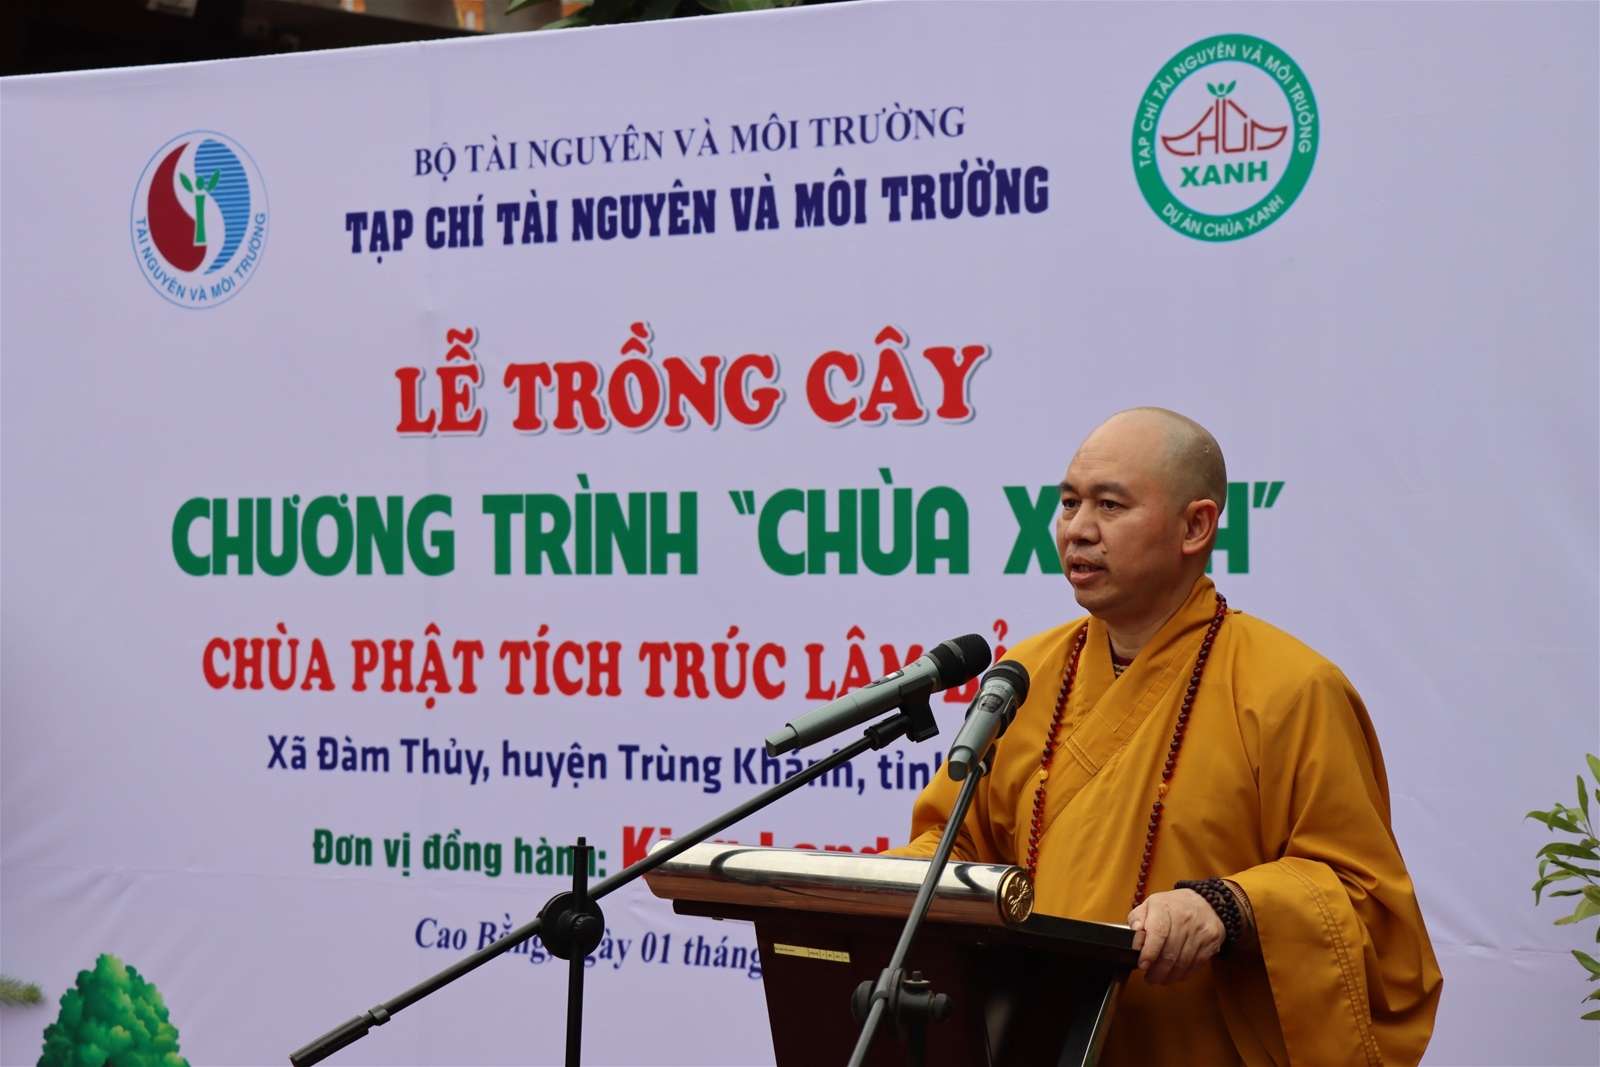 Tạp chí TN&amp;MT trồng 1008 cây tại chùa Phật Tích Trúc Lâm Bản Giốc, Cao Bằng